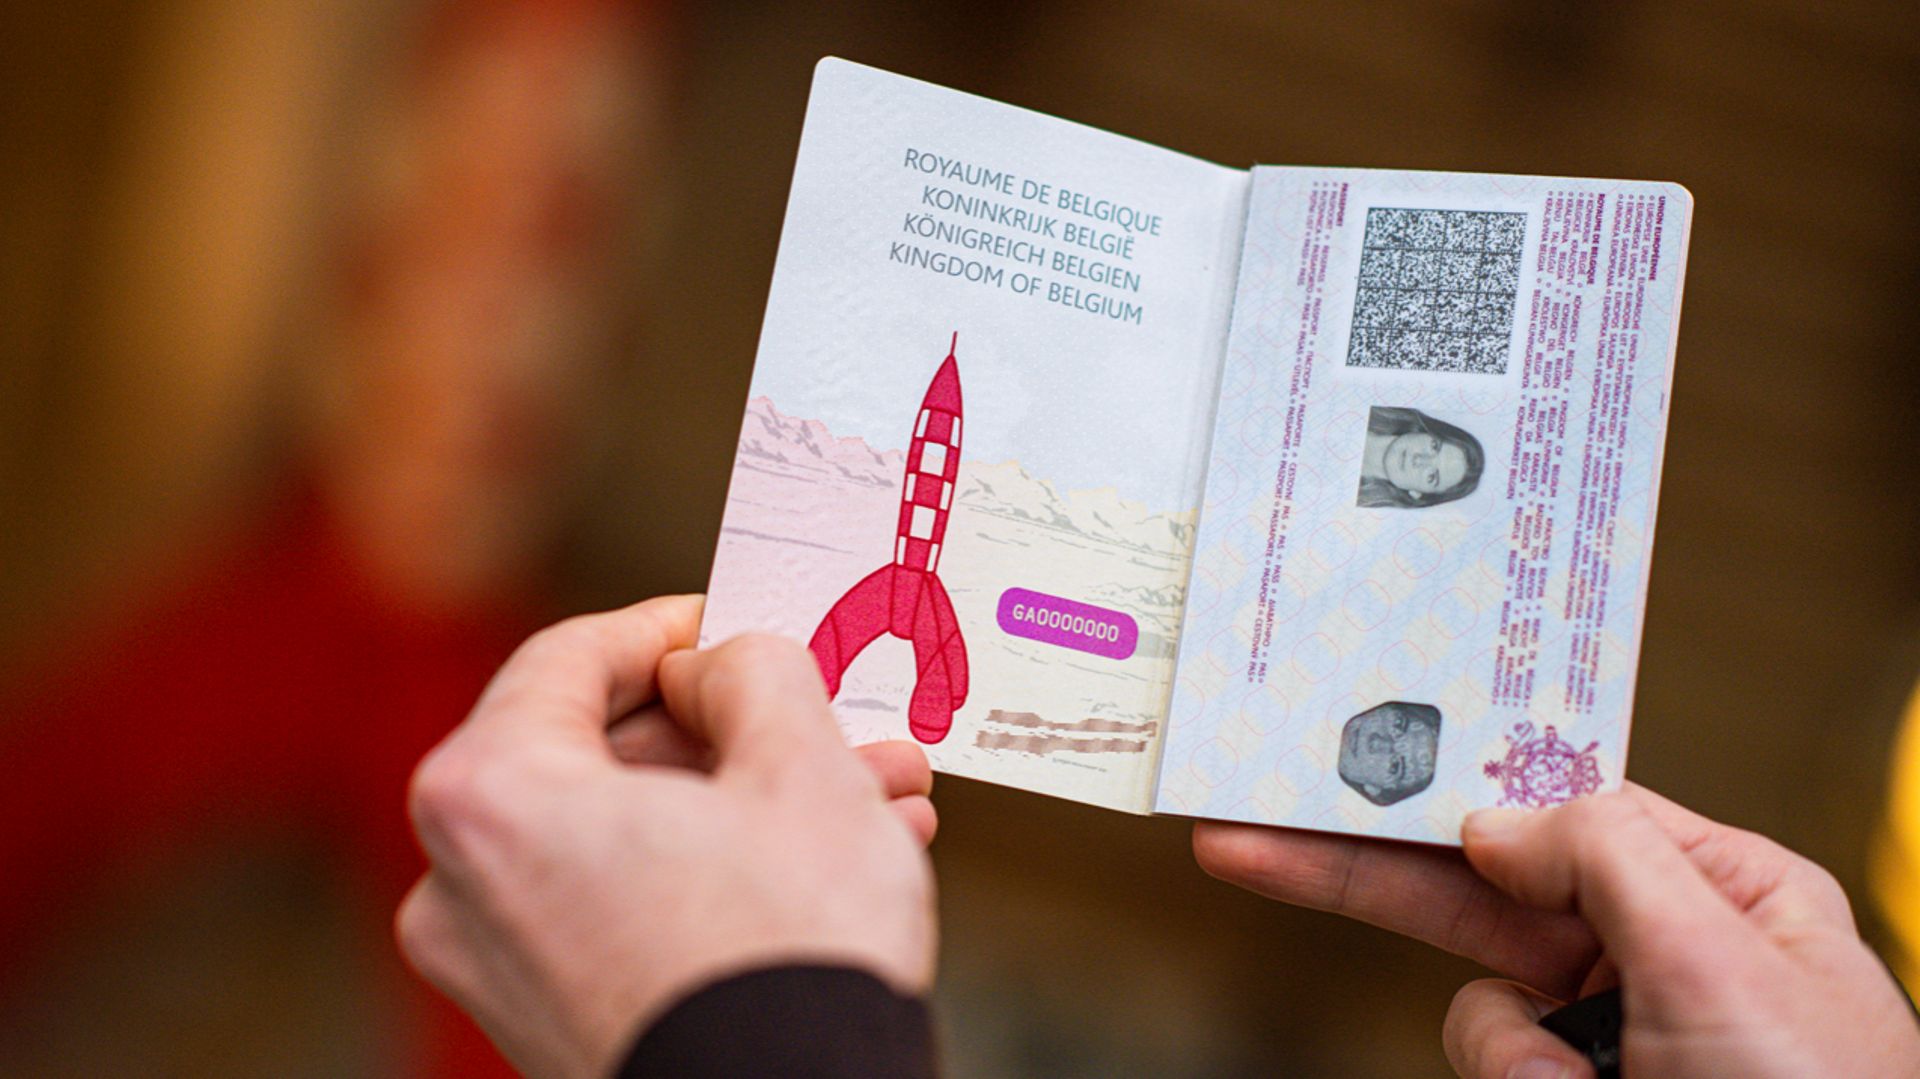 Le nouveau passeport belge, disponible à partir du 7 février 2022, s’inspire de l’univers de la bande dessinée belge et comporte deux fois plus d’éléments de sécurité.